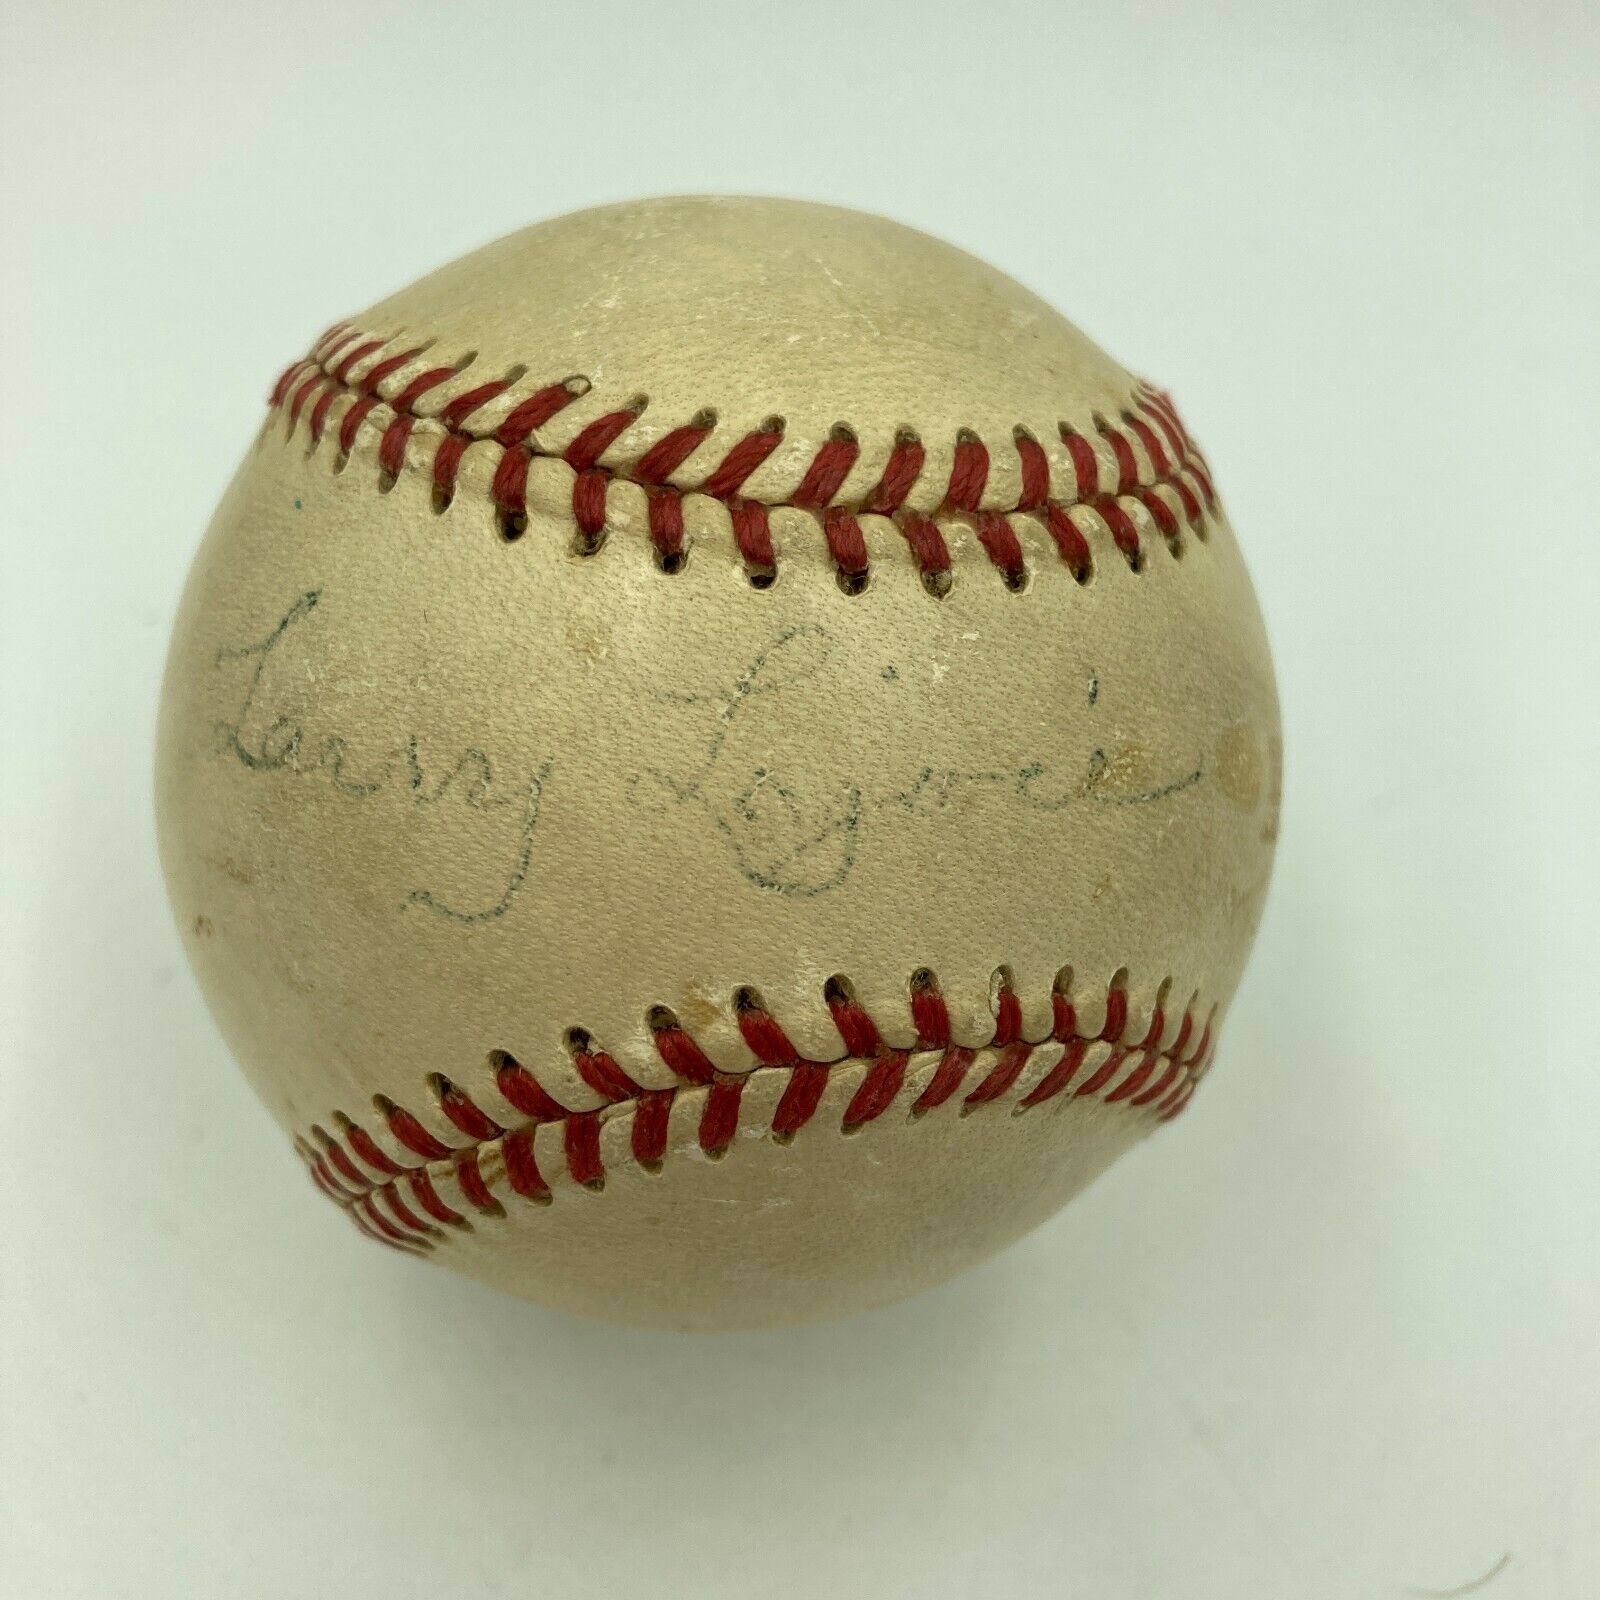 Napoleon Nap Lajoie Single Signed 1940\'s American League Baseball PSA DNA COA